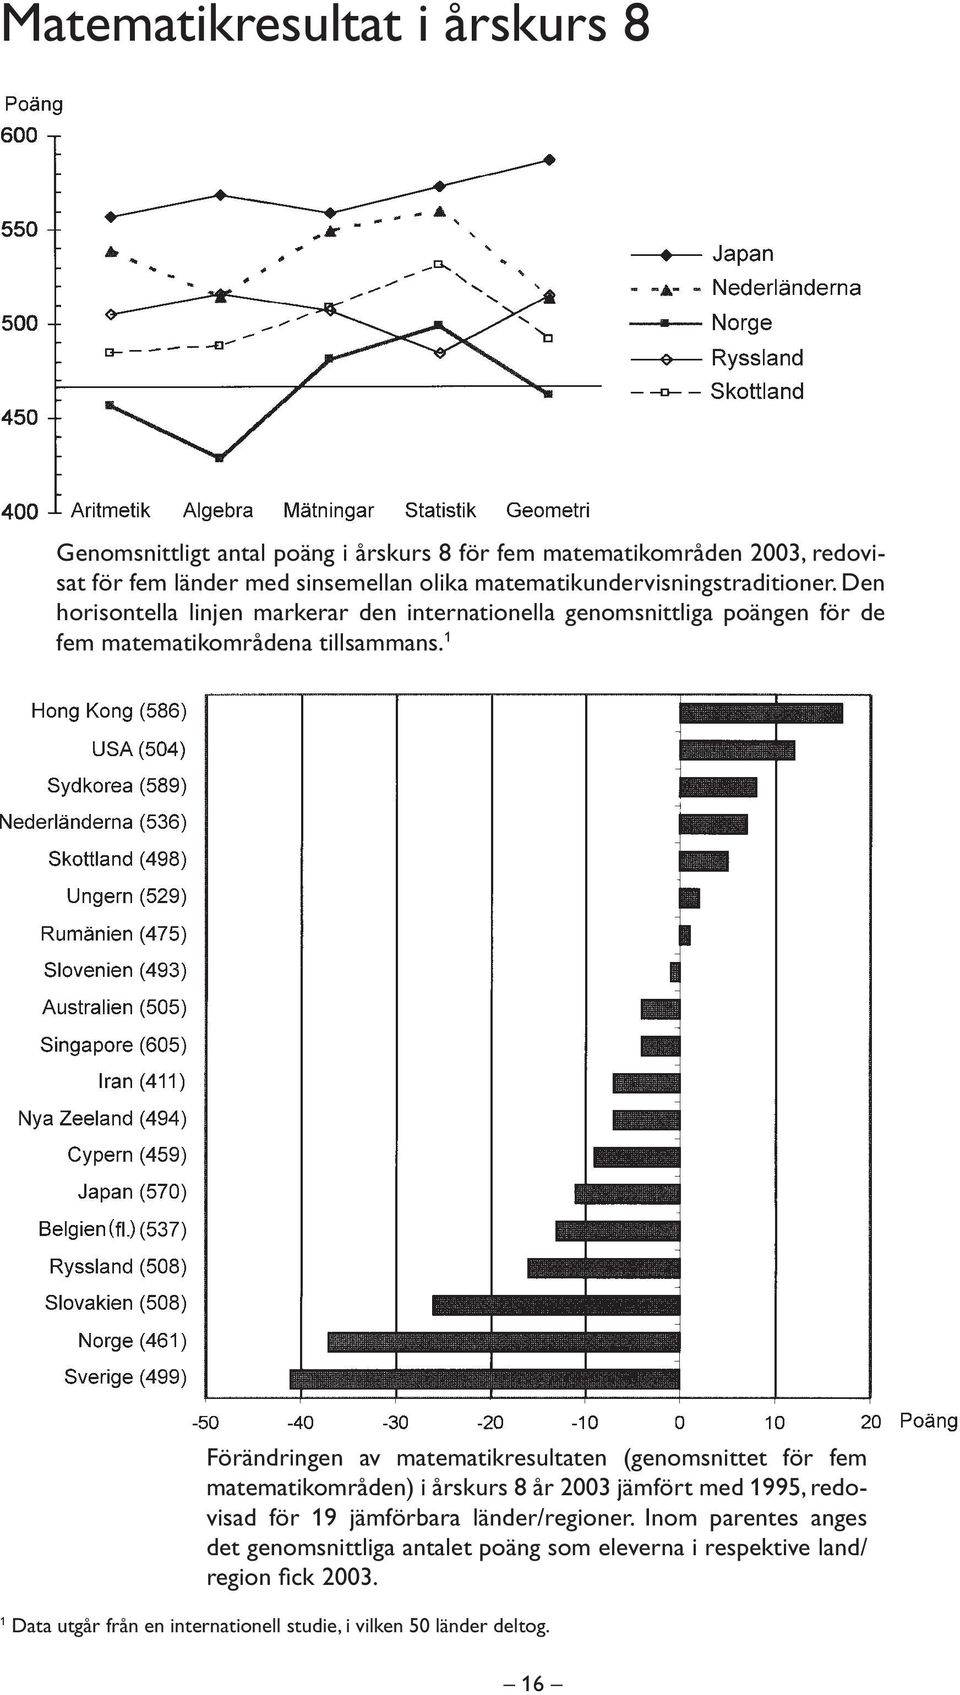 1 örändringen av matematikresultaten (genomsnittet för fem matematikområden) i årskurs 8 år 2003 jämfört med 1995, redovisad för 19 jämförbara länder/regioner.